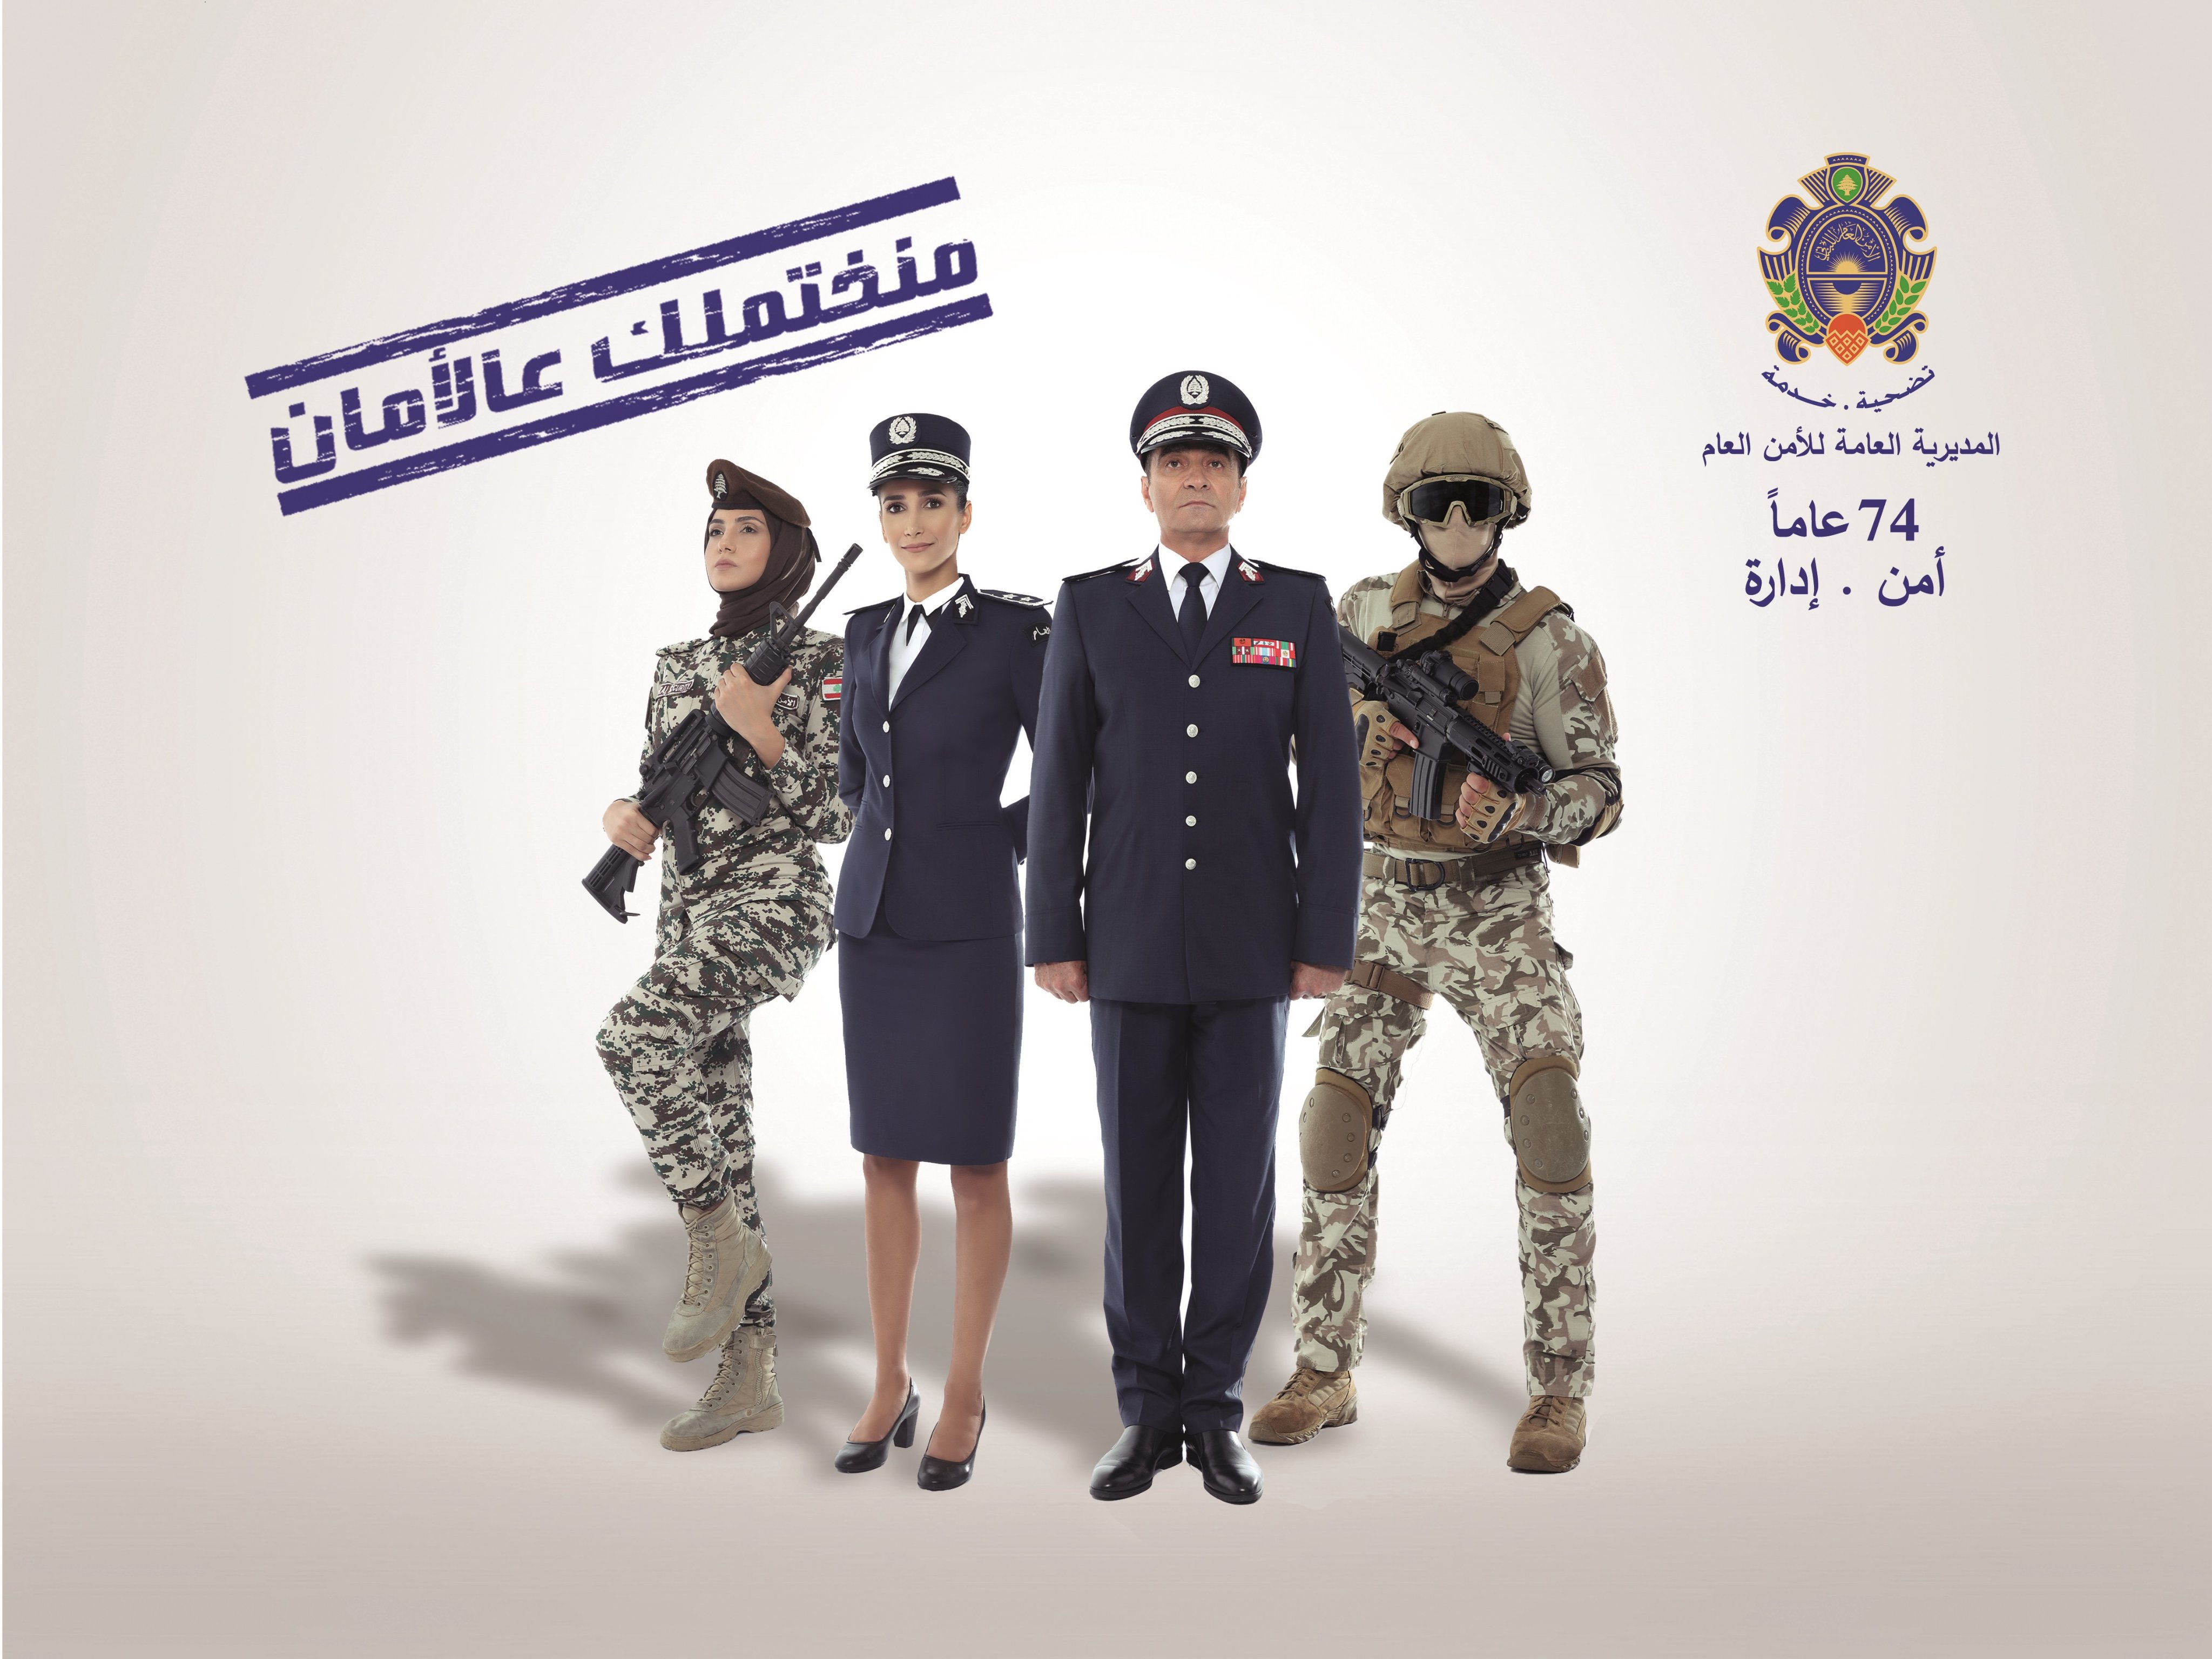 الأمن العام اللبناني يحتفل بعيده الـ 74...ولفتة مميزة لدور الفتاة المحجبة!